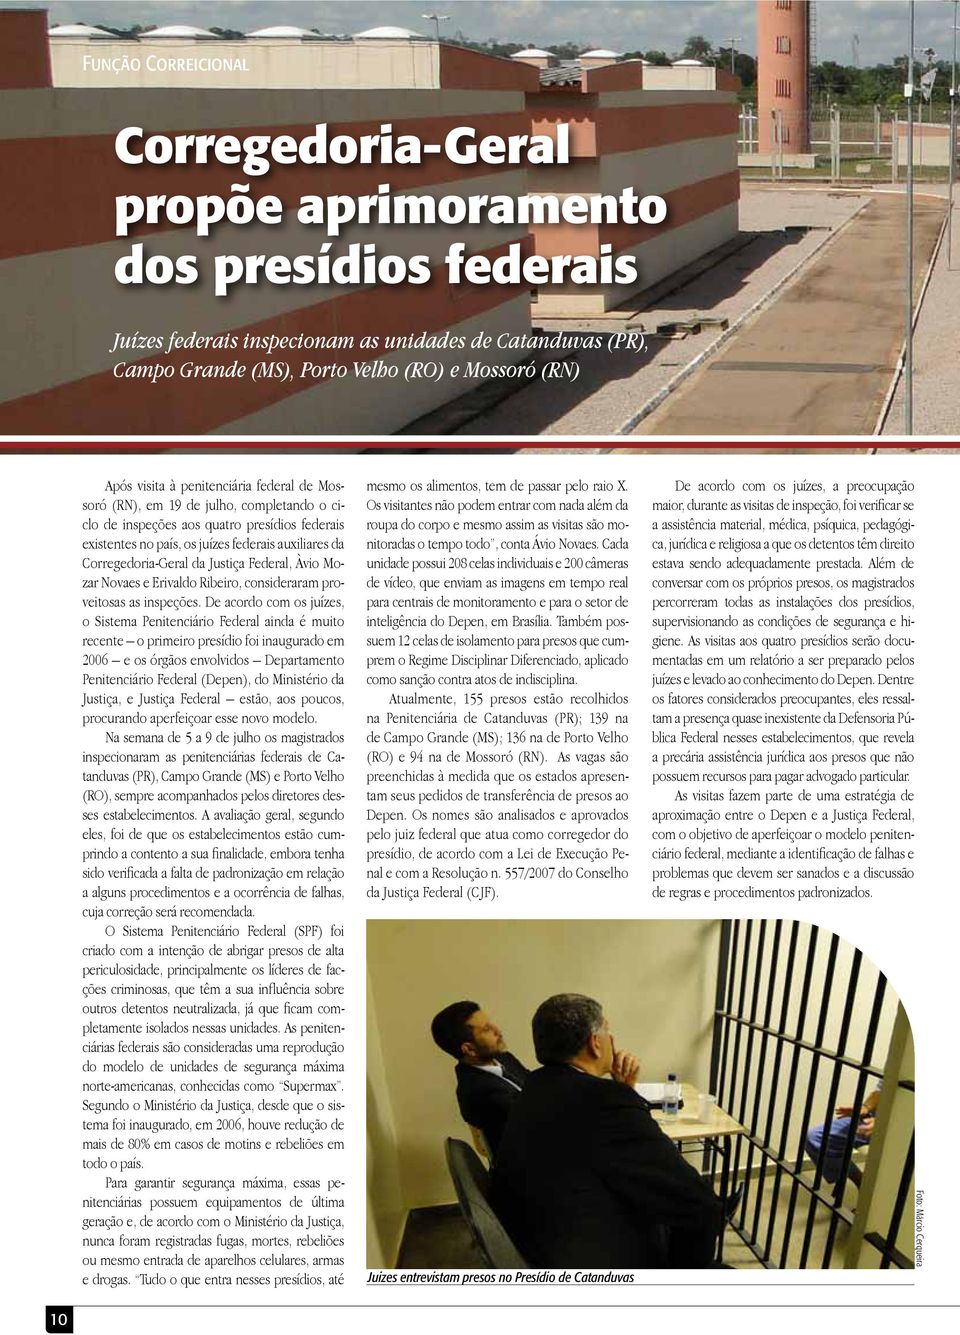 da Justiça Federal, Àvio Mozar Novaes e Erivaldo Ribeiro, consideraram proveitosas as inspeções.